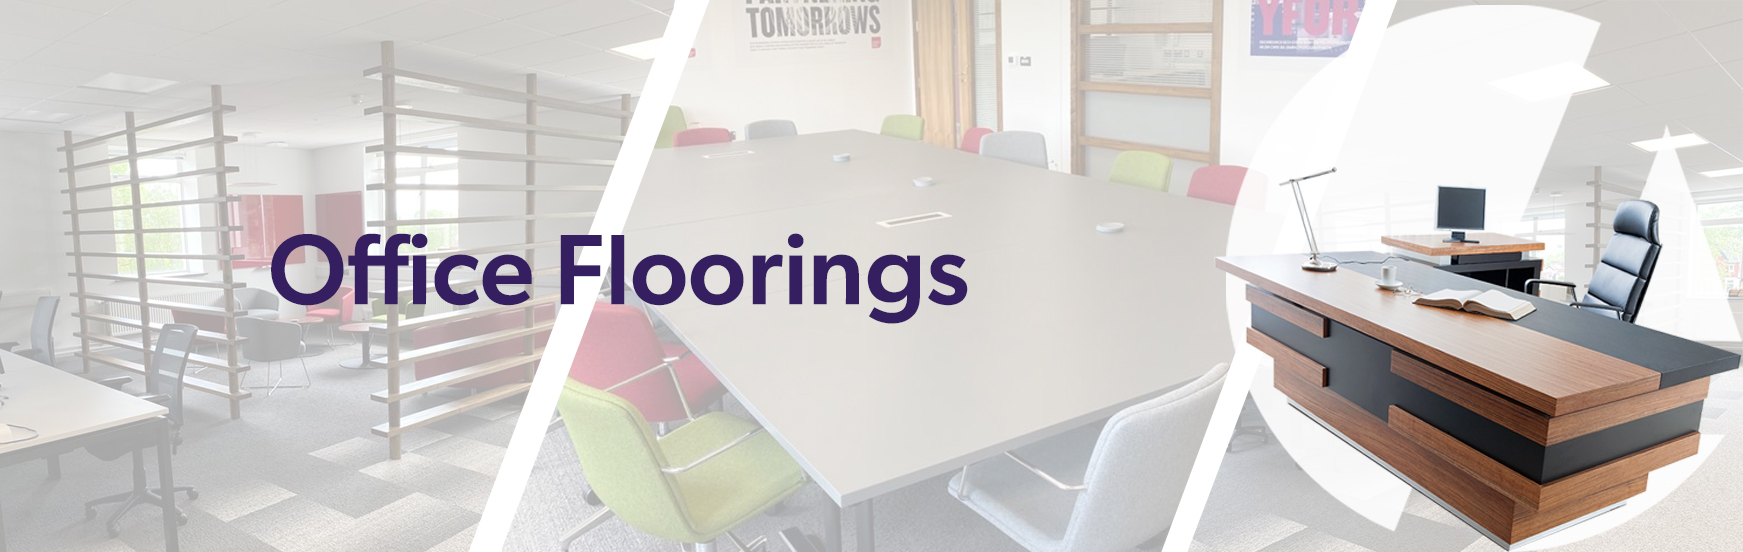 office floorings